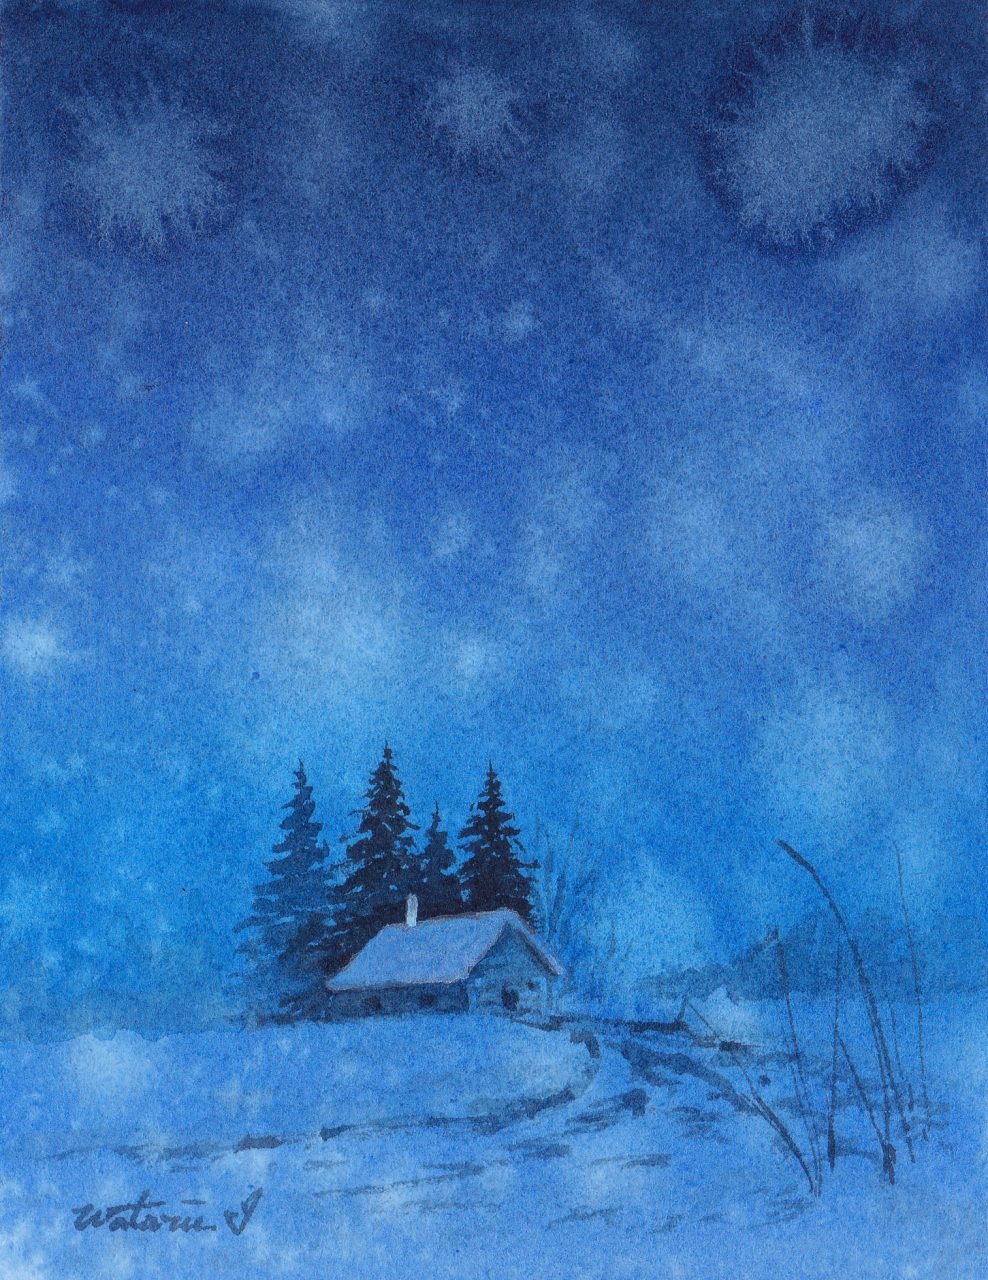 雪の夜 石垣渉 水彩画ギャラリー 国内風景